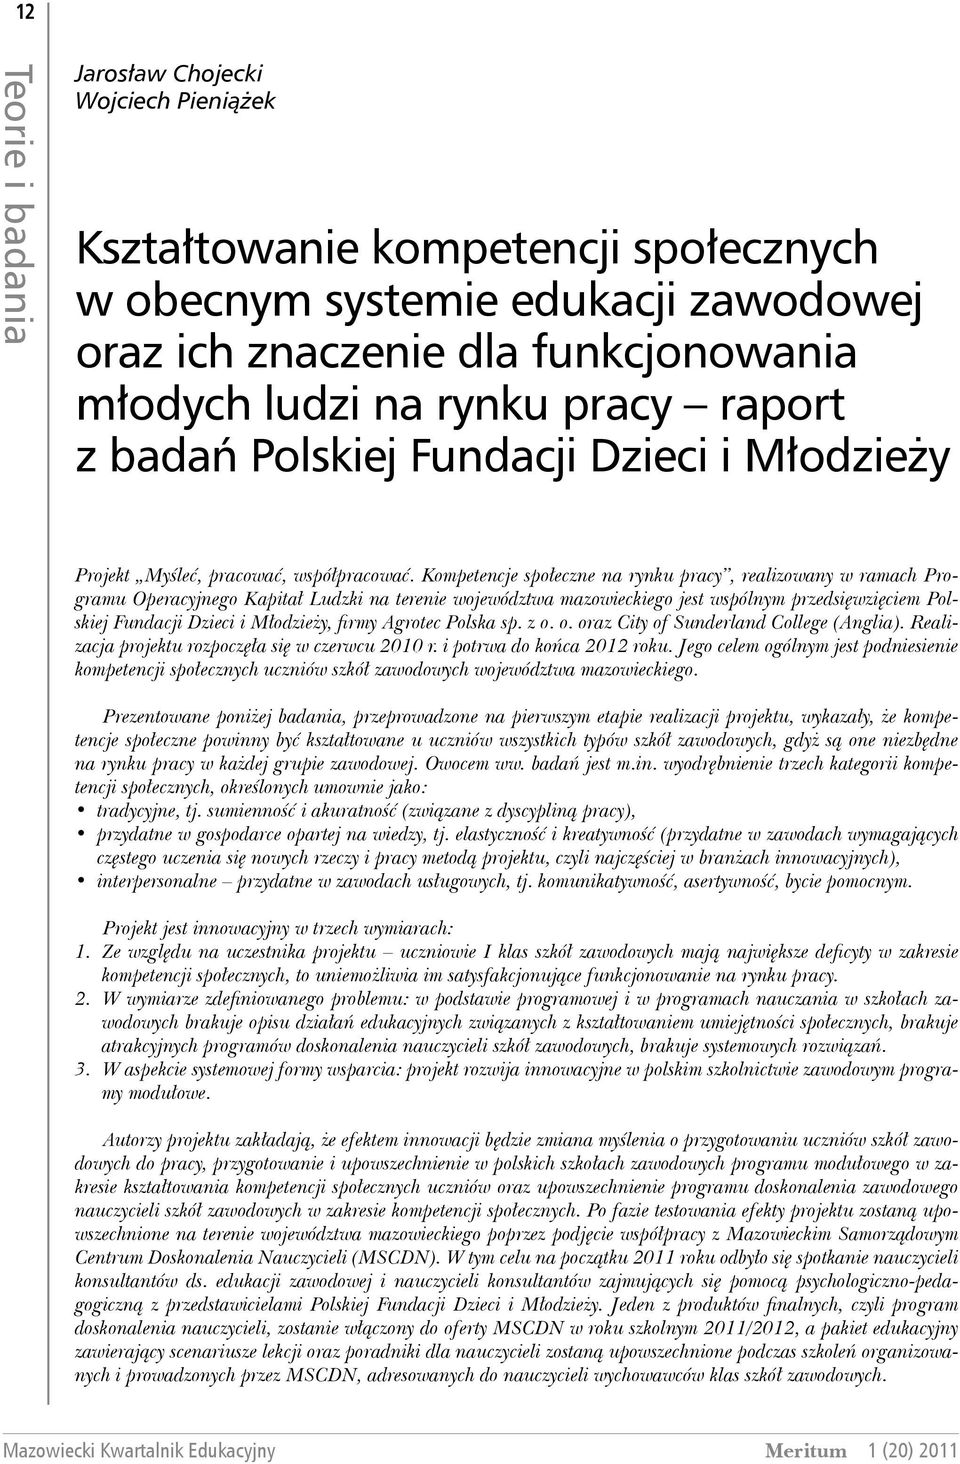 Kompetencje społeczne na rynku pracy, realizowany w ramach Programu Operacyjnego Kapitał Ludzki na terenie województwa mazowieckiego jest wspólnym przedsięwzięciem Polskiej Fundacji Dzieci i